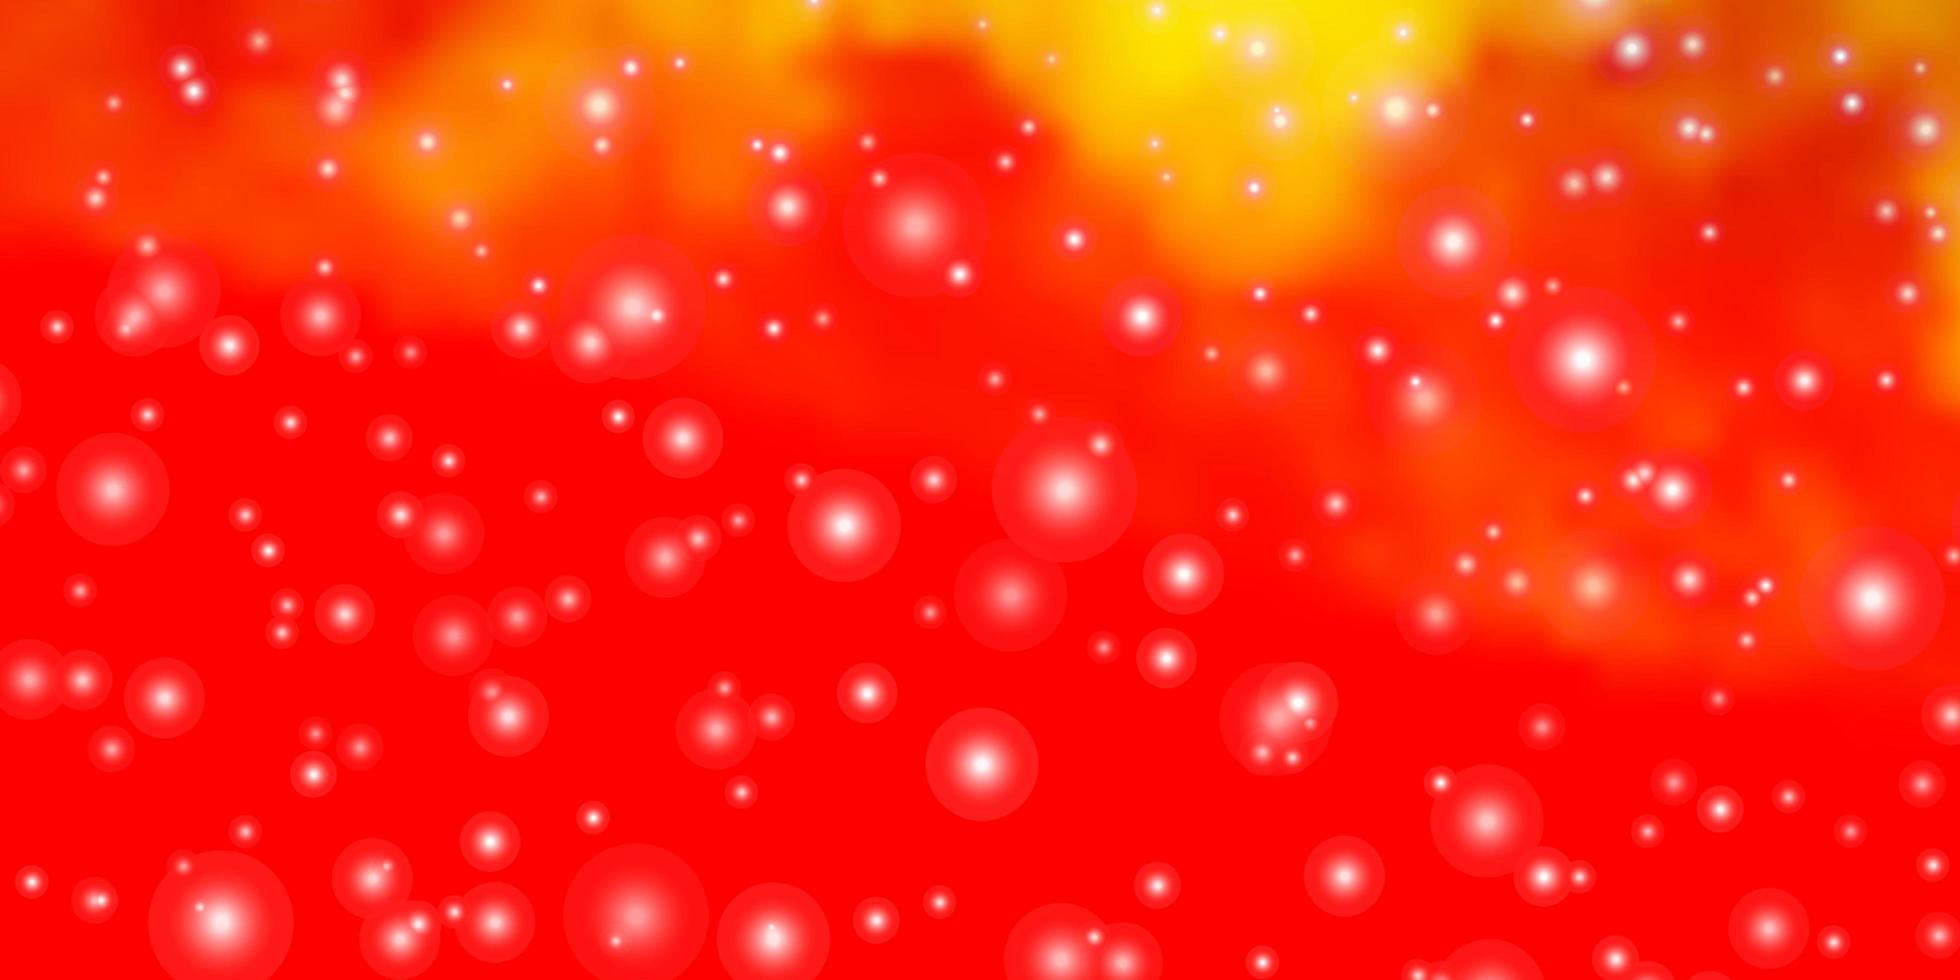 sfondo vettoriale arancione chiaro con stelle colorate.